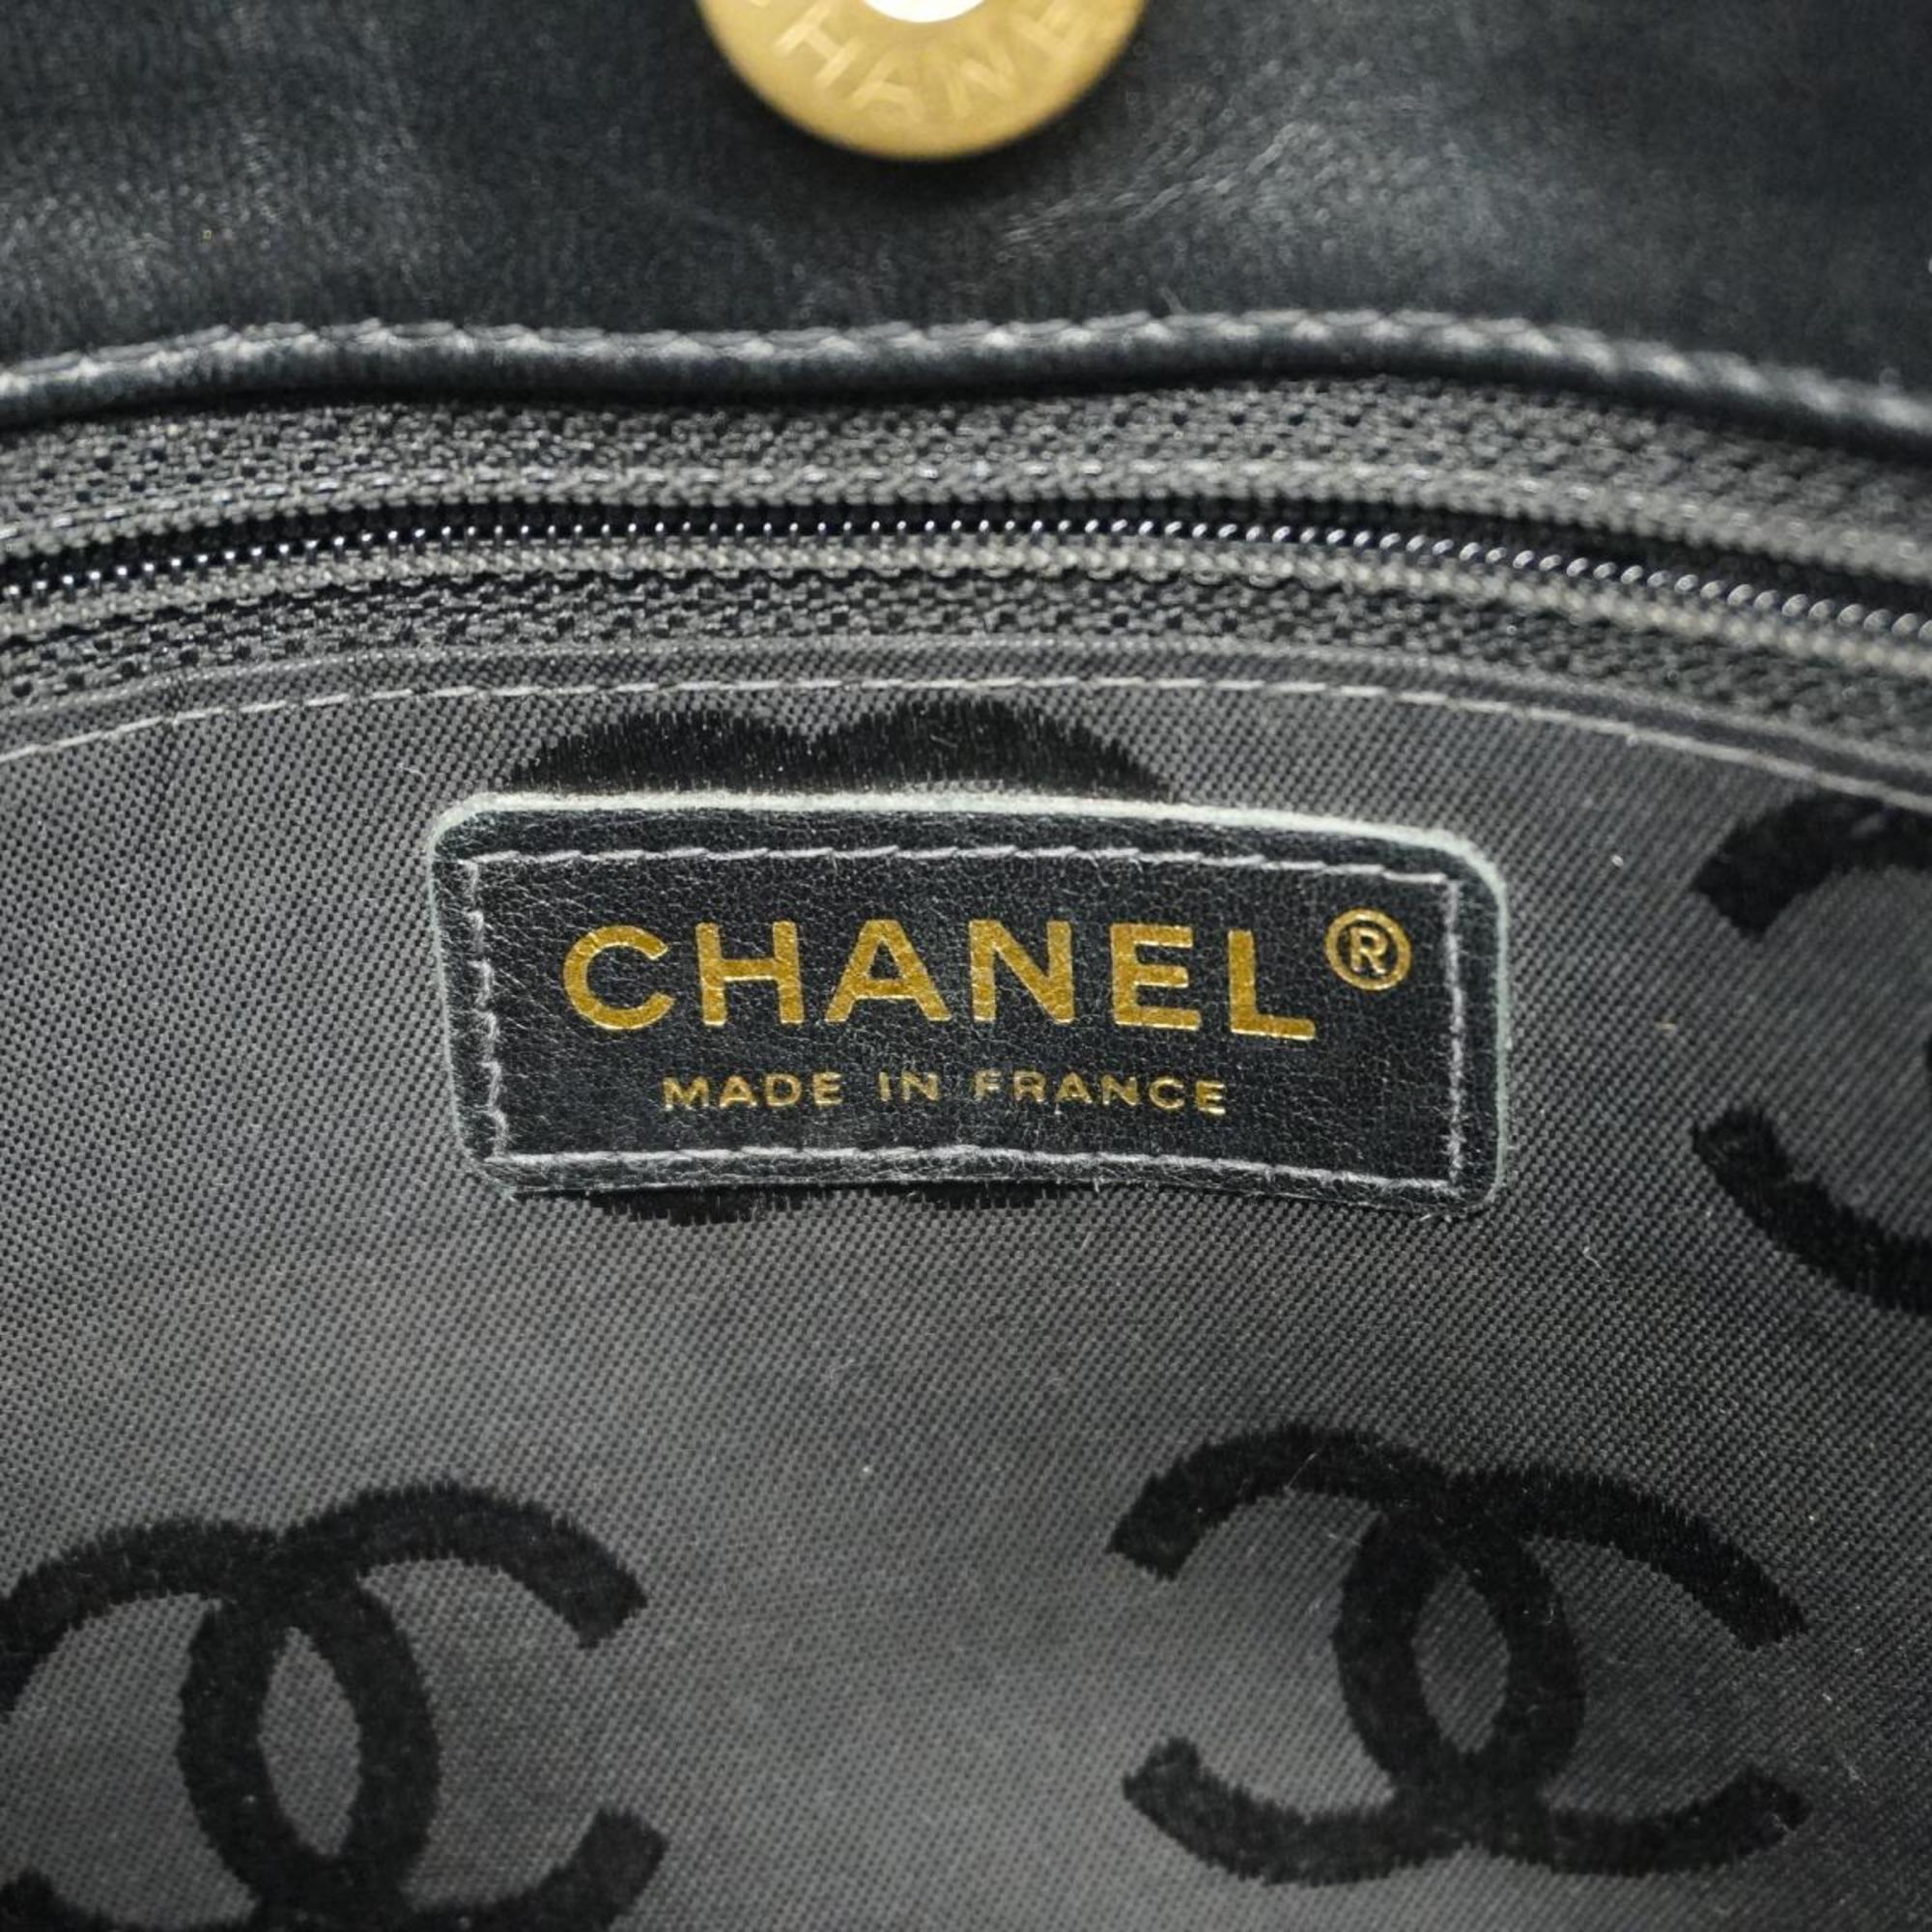 シャネル(Chanel) シャネル トートバッグ マトラッセ レザー ブラック  レディース